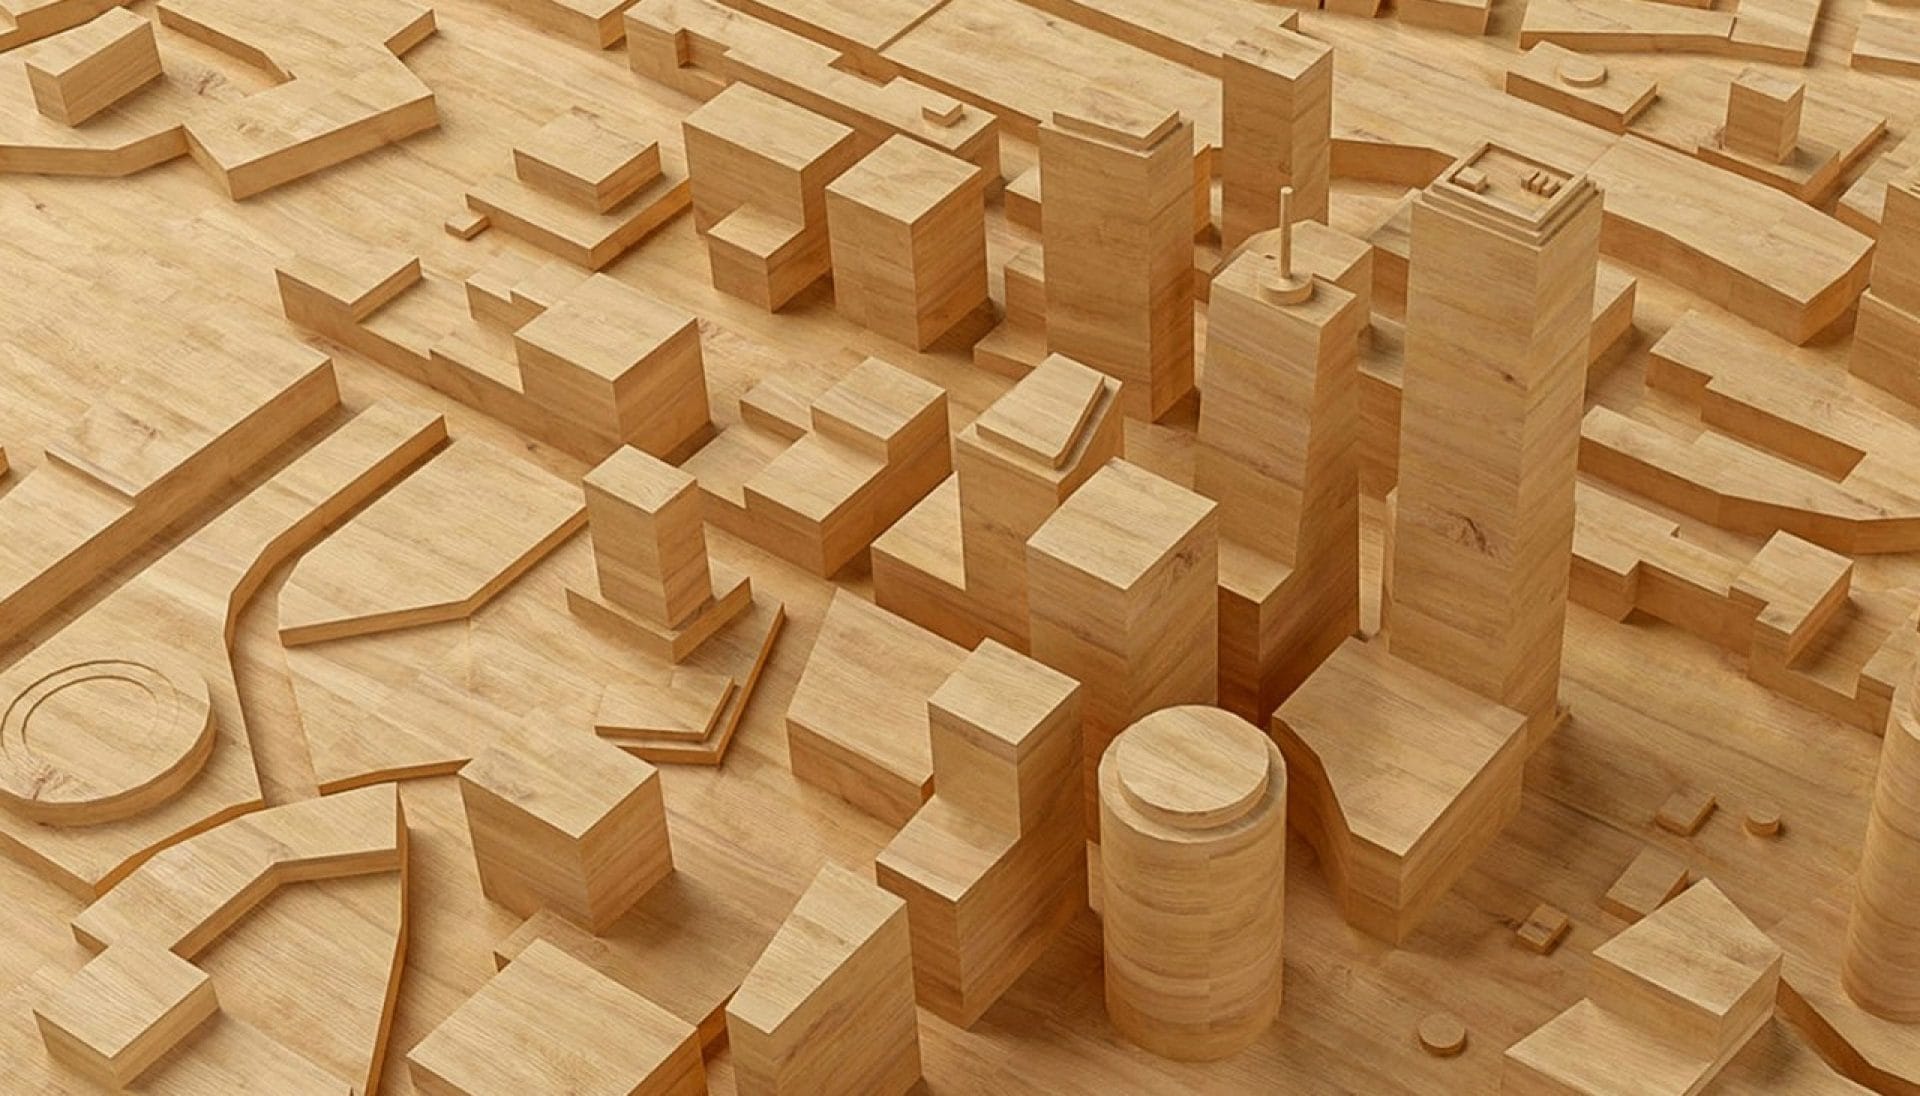 Afbeelding met enkele gebouwen die driedimensionaal in een houten plank zijn uitgesneden